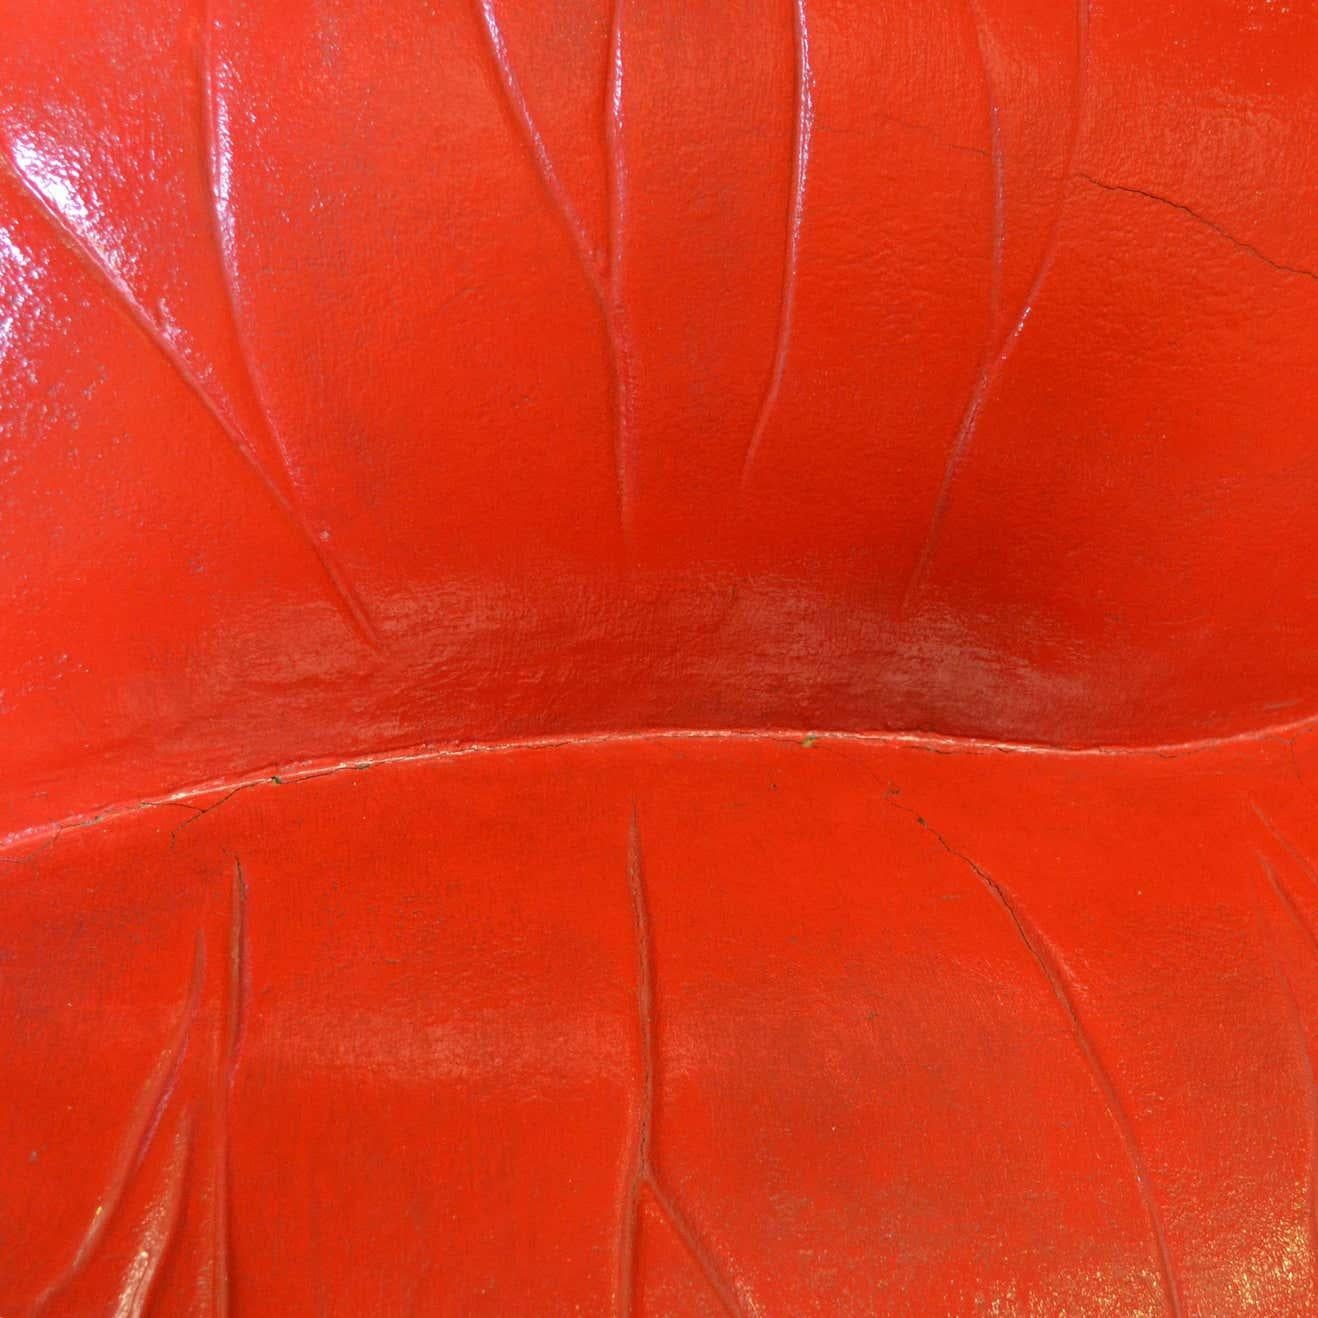 Salvador Dali Surrealist 'Salivasofa' Unique Prototype Red Lips Sofa In Fair Condition For Sale In Barcelona, Barcelona